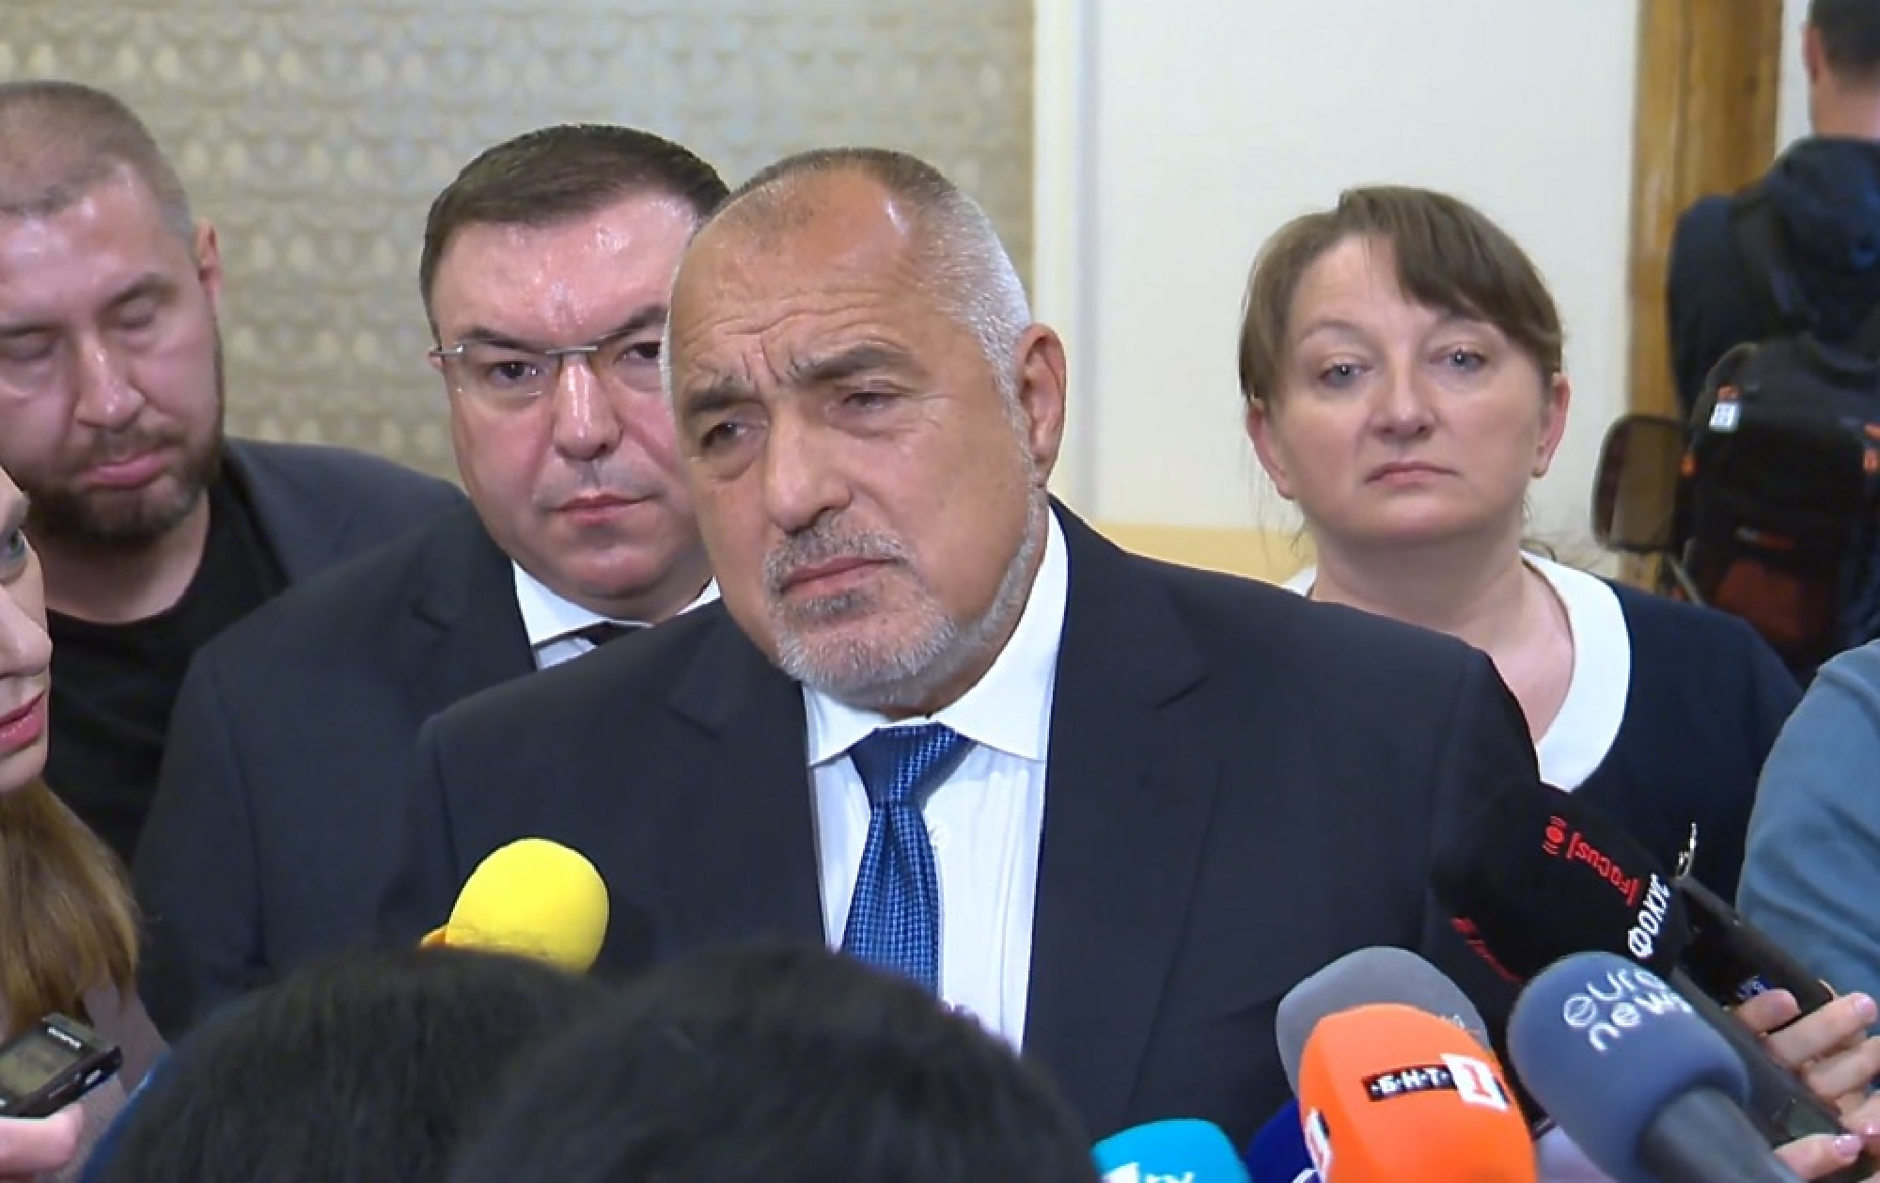 Борисов: Конституционно правителство също е вариант